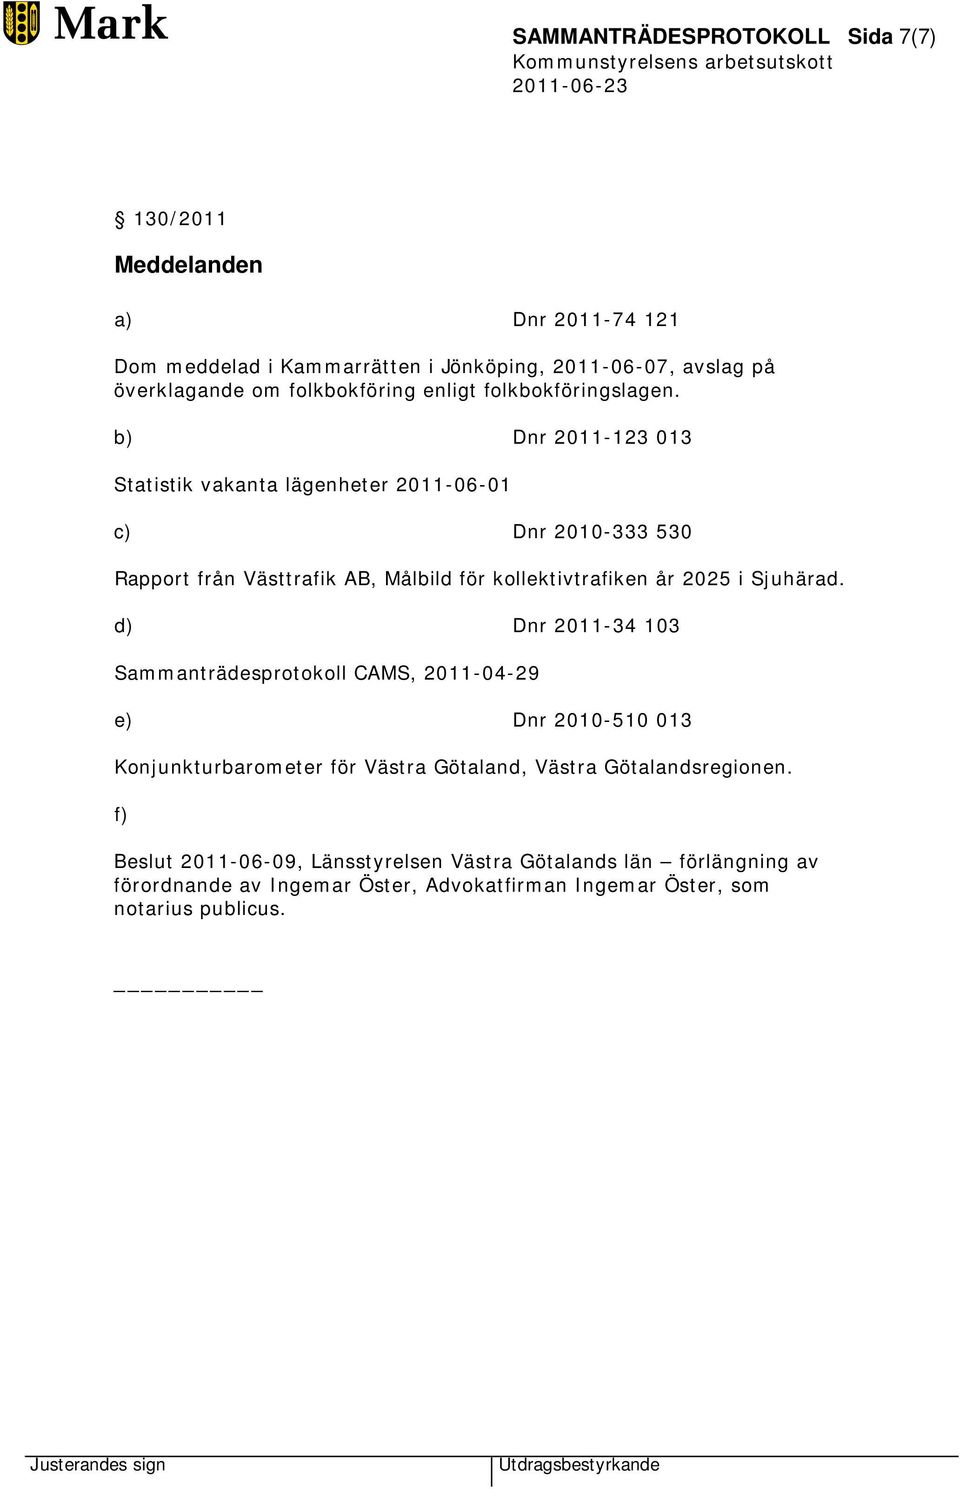 b) Dnr 2011-123 013 Statistik vakanta lägenheter 2011-06-01 c) Dnr 2010-333 530 Rapport från Västtrafik AB, Målbild för kollektivtrafiken år 2025 i Sjuhärad.